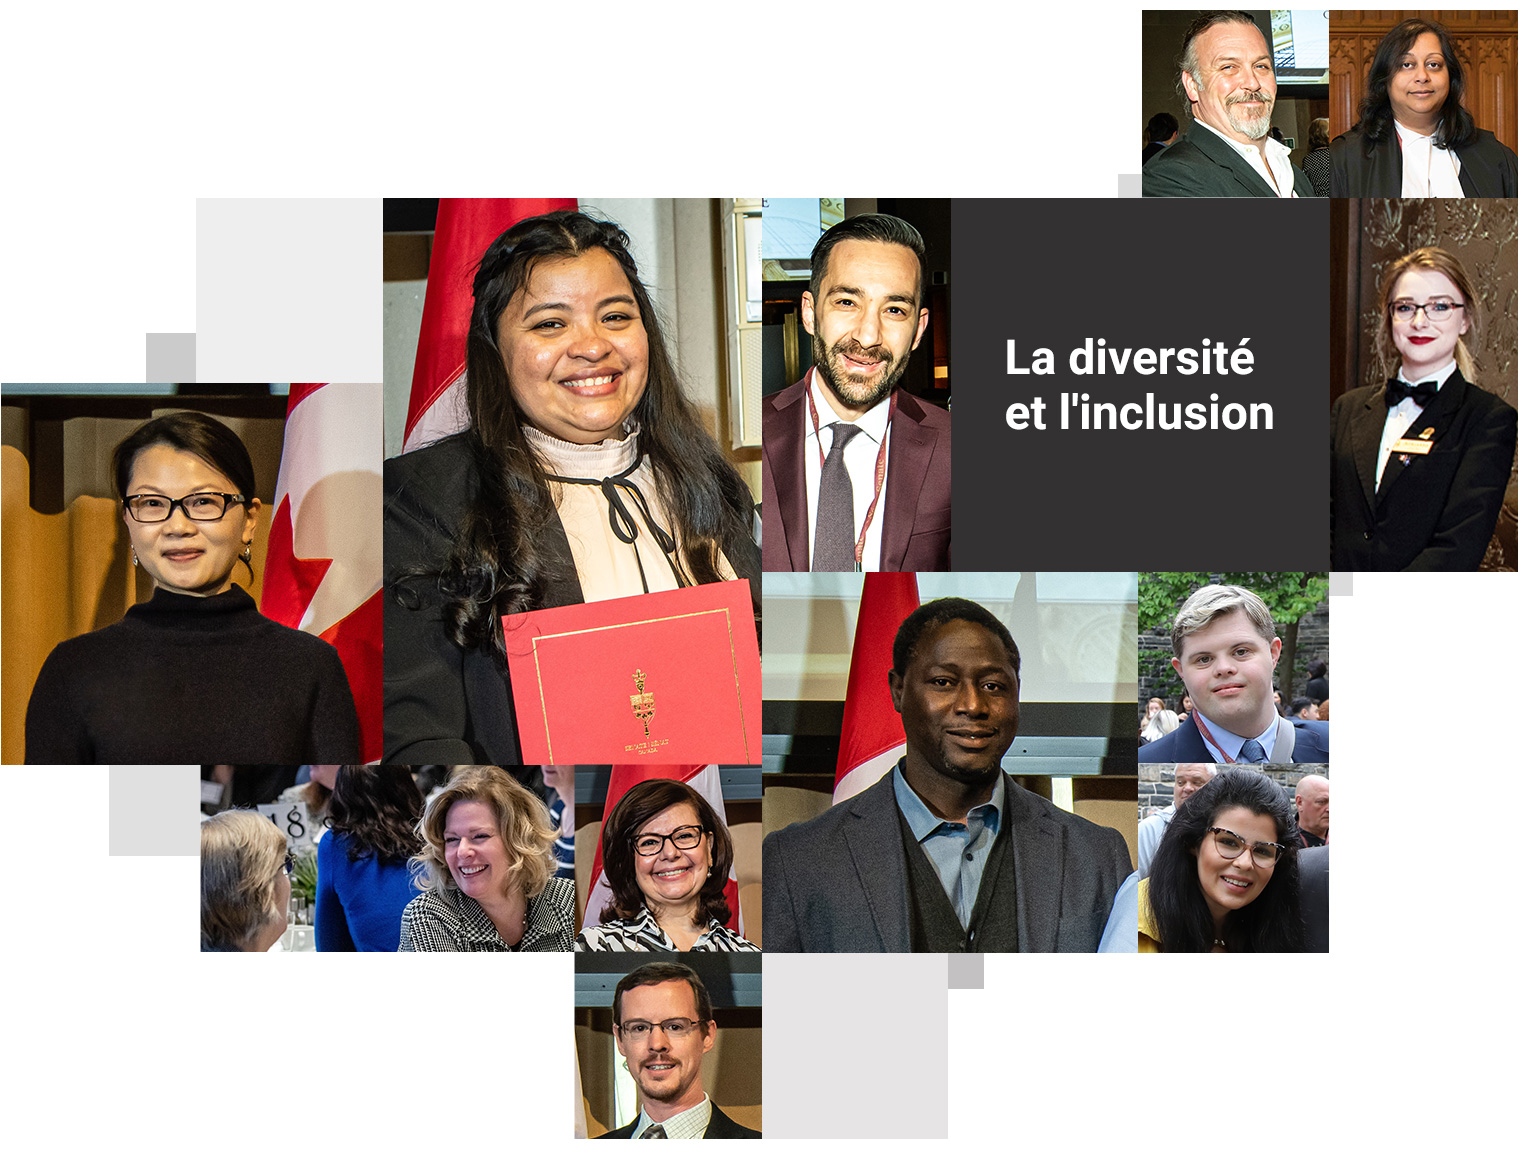 La diversité et l'inclusion